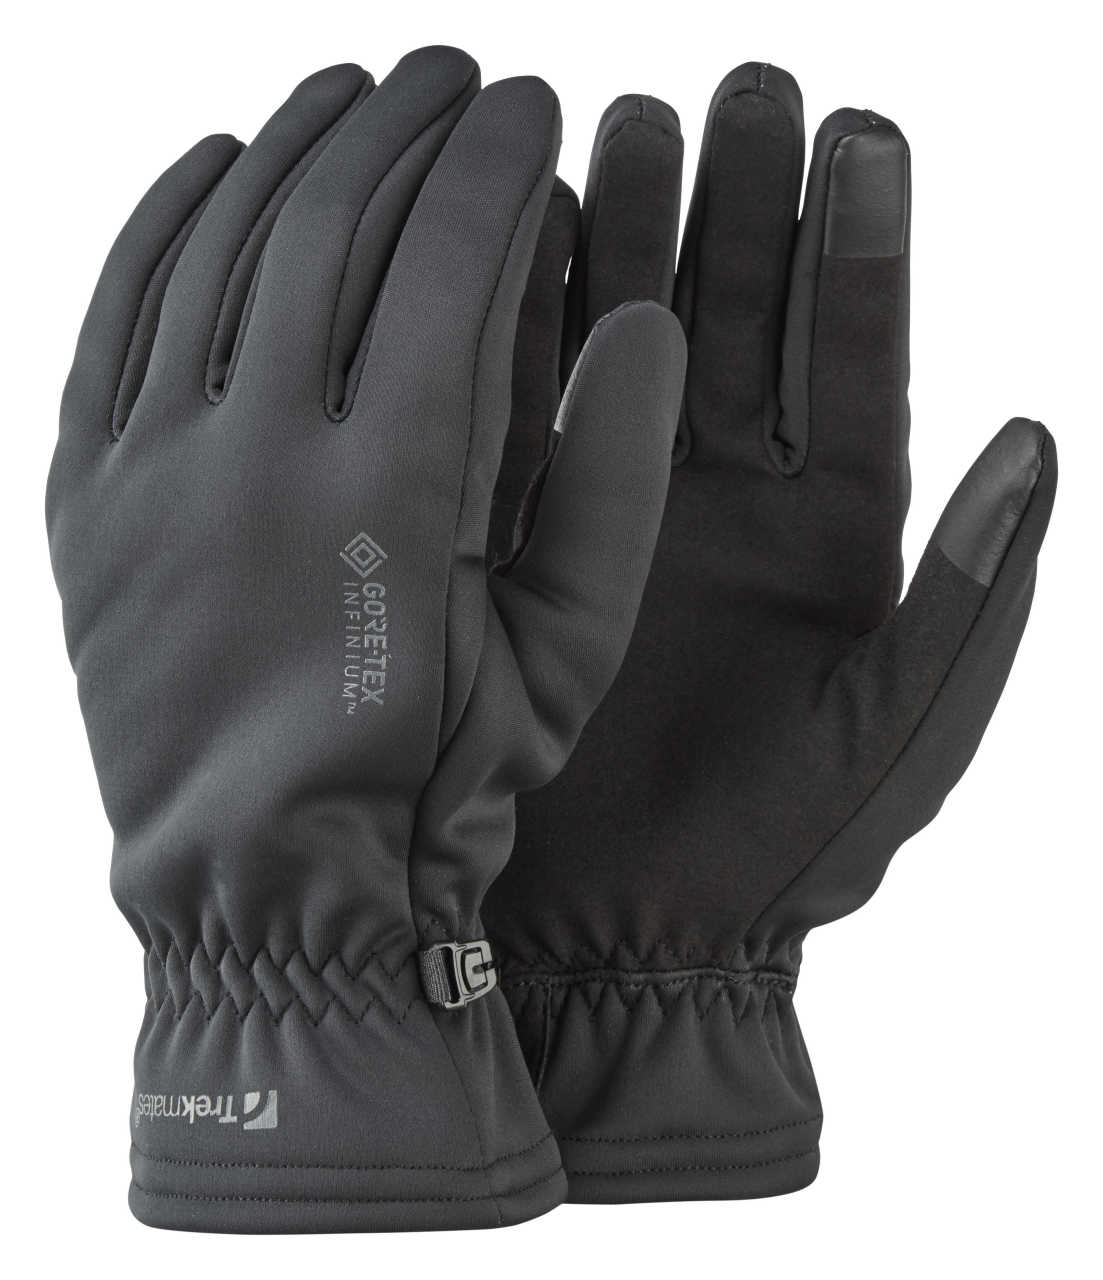 Trion 3 in 1 GTX Glove Black